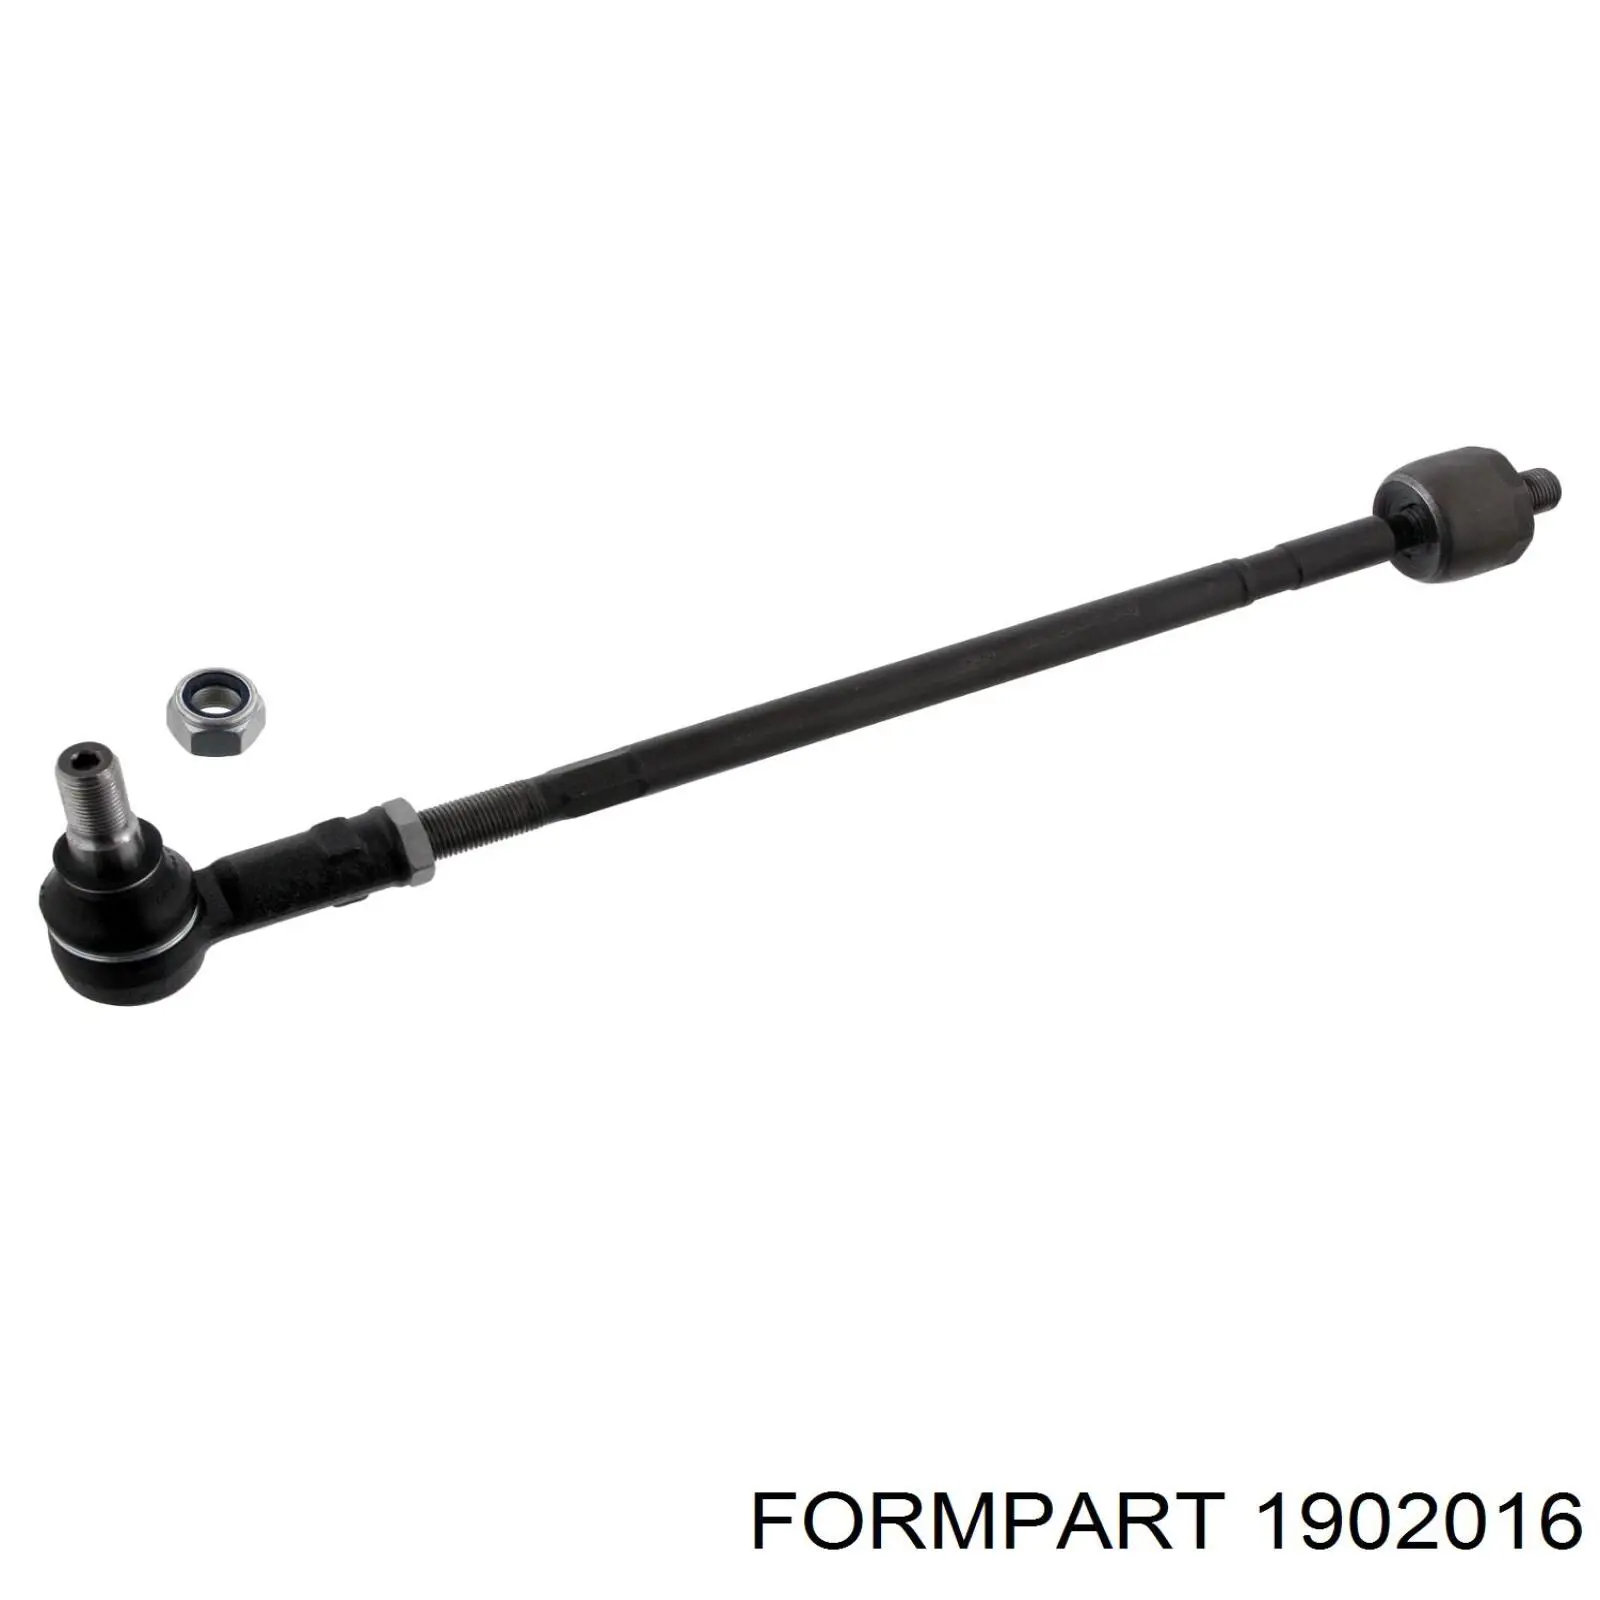 1902016 Formpart/Otoform rótula barra de acoplamiento exterior